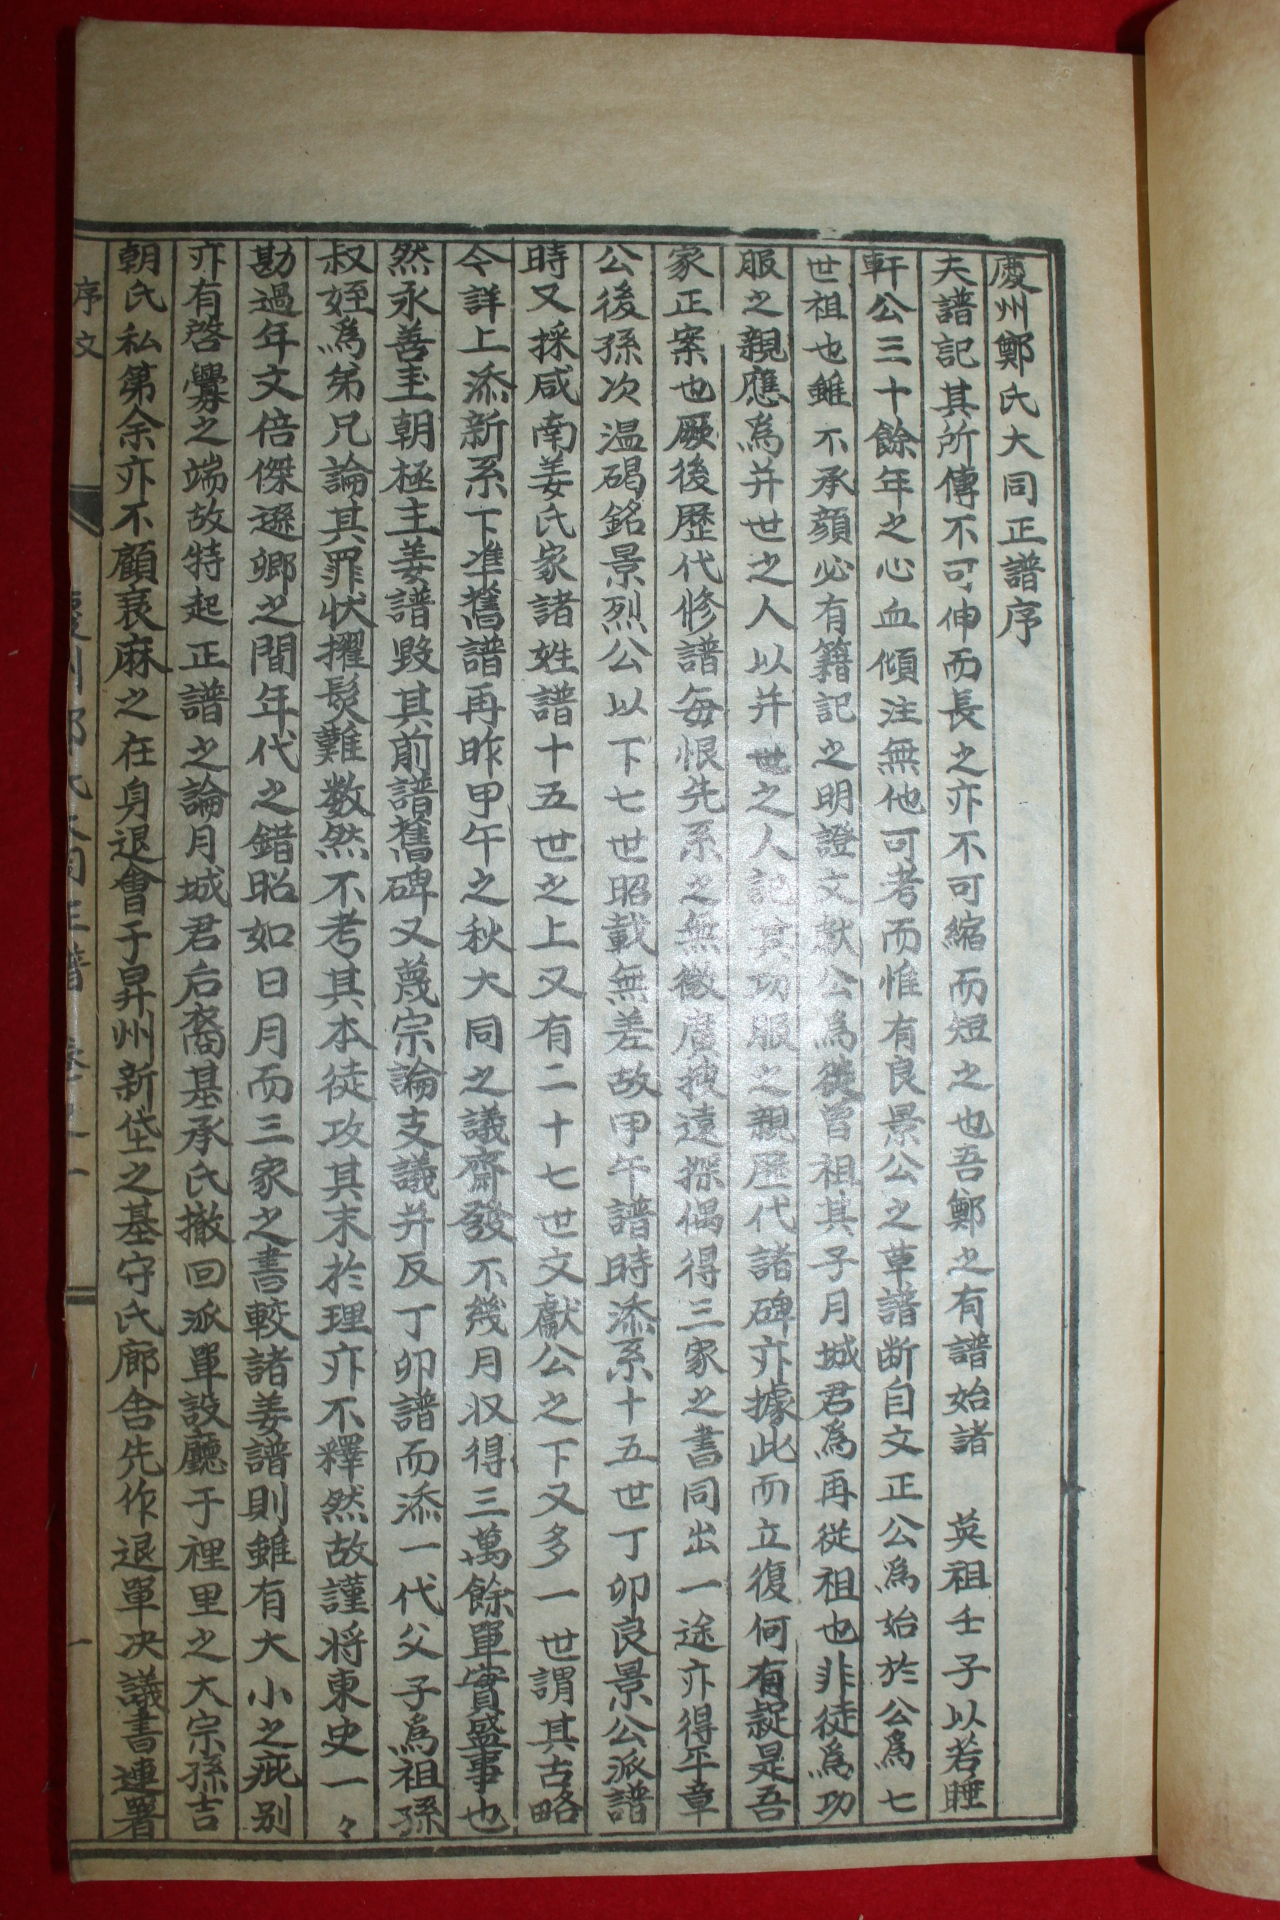 1958년 석판본 경주정씨대동정보(慶州鄭氏大同正譜)  11책